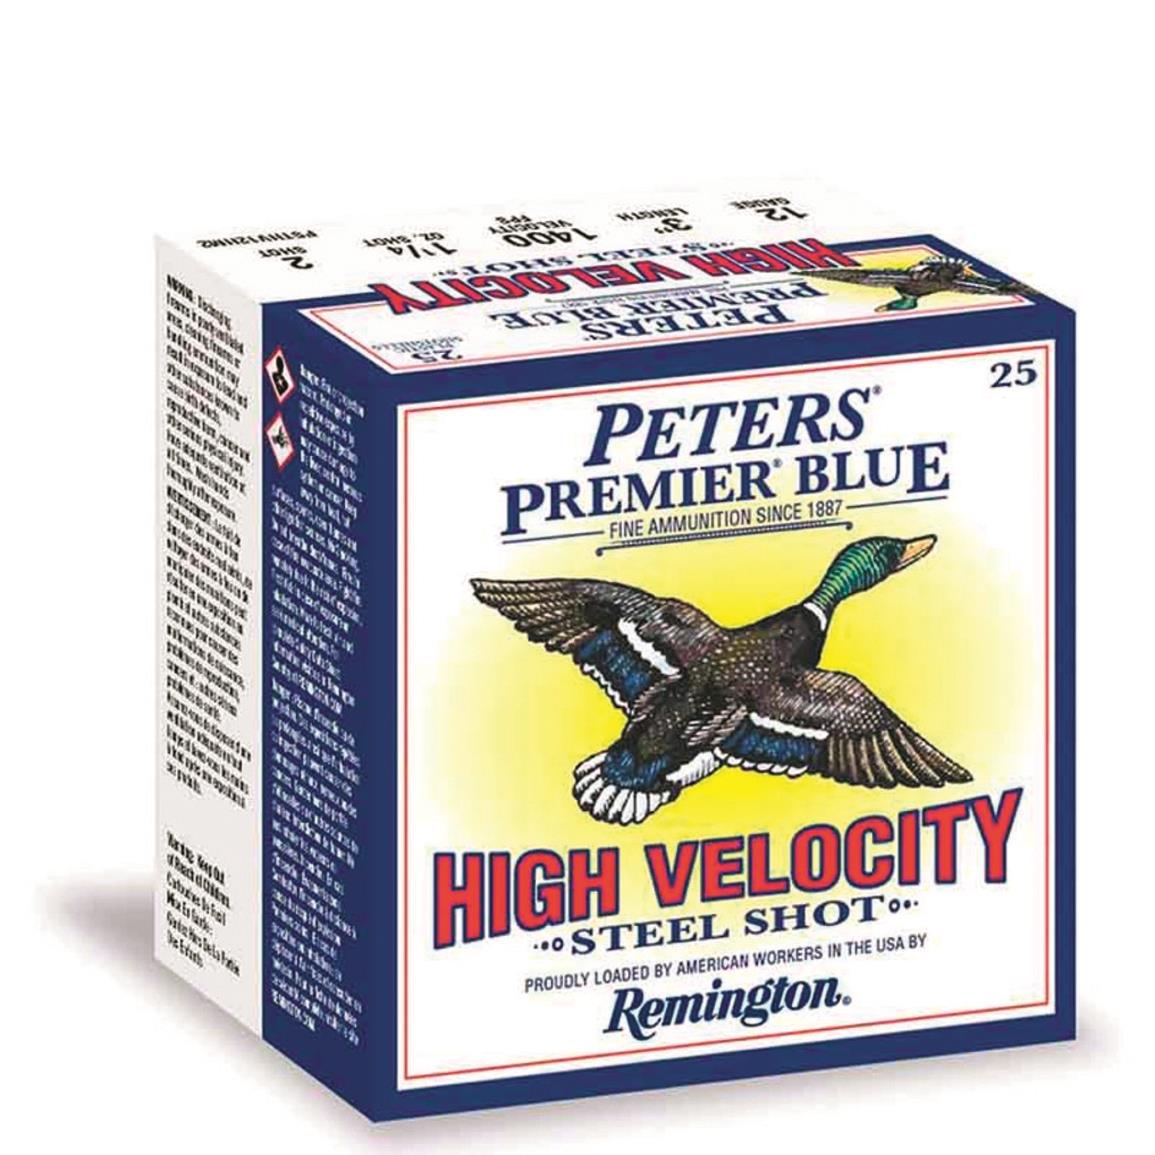 Remington Peters Premier Blue High Velocity Steel Shot, 12 Gauge, 3", 1 1/4 oz., 25 Rounds